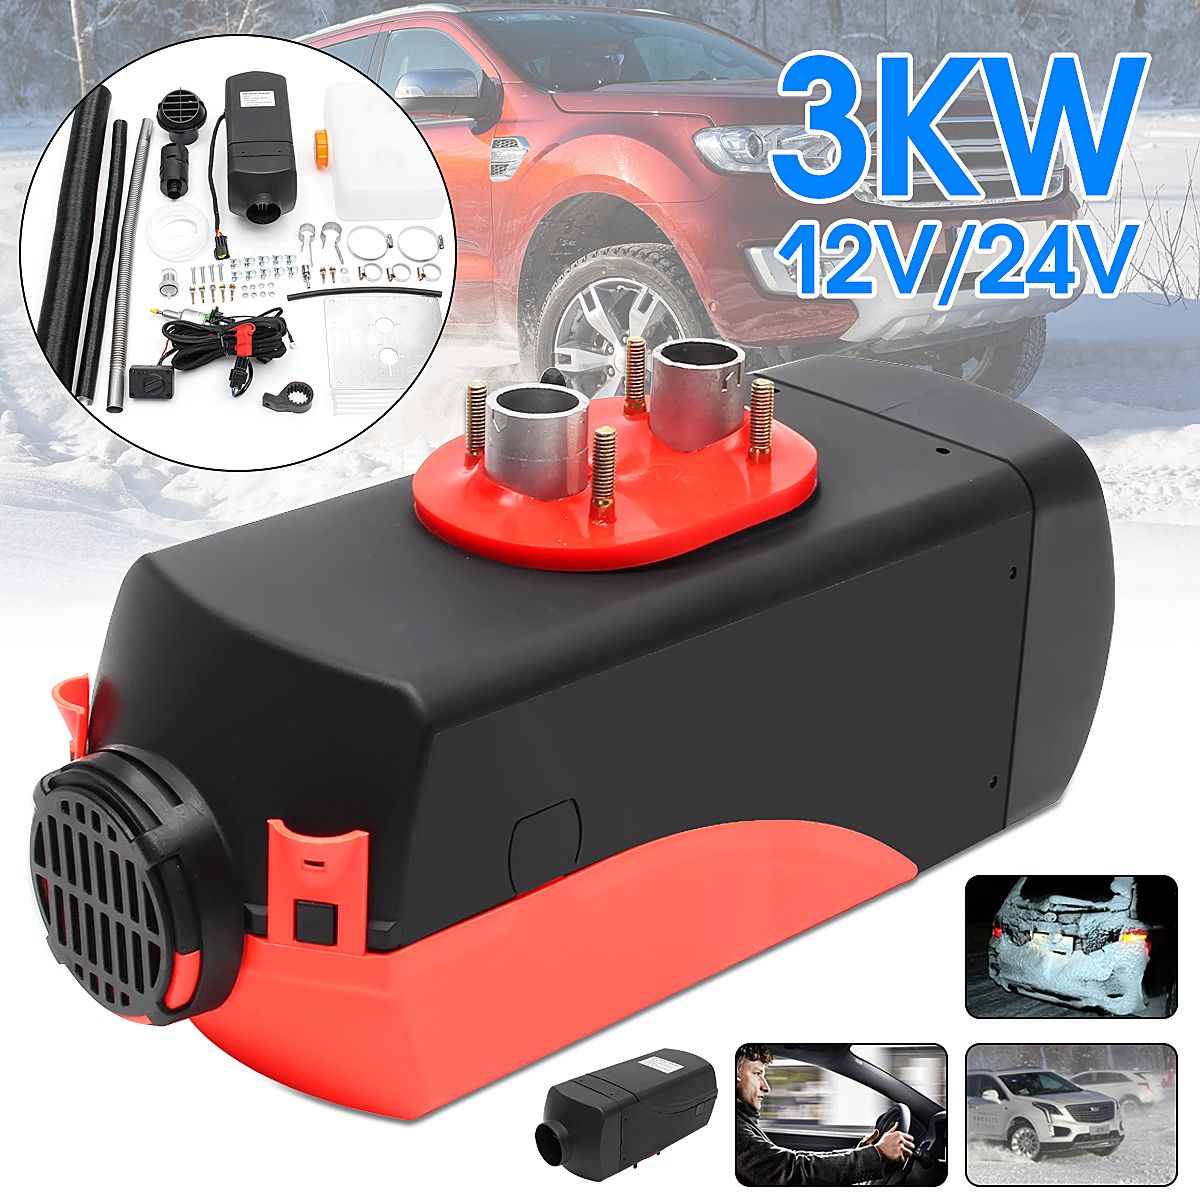 3kw-1224V-Diesel-Air-Parking-Heater-Haplopore-Knob-Diesel-Heating-Machine-Heater-1274570